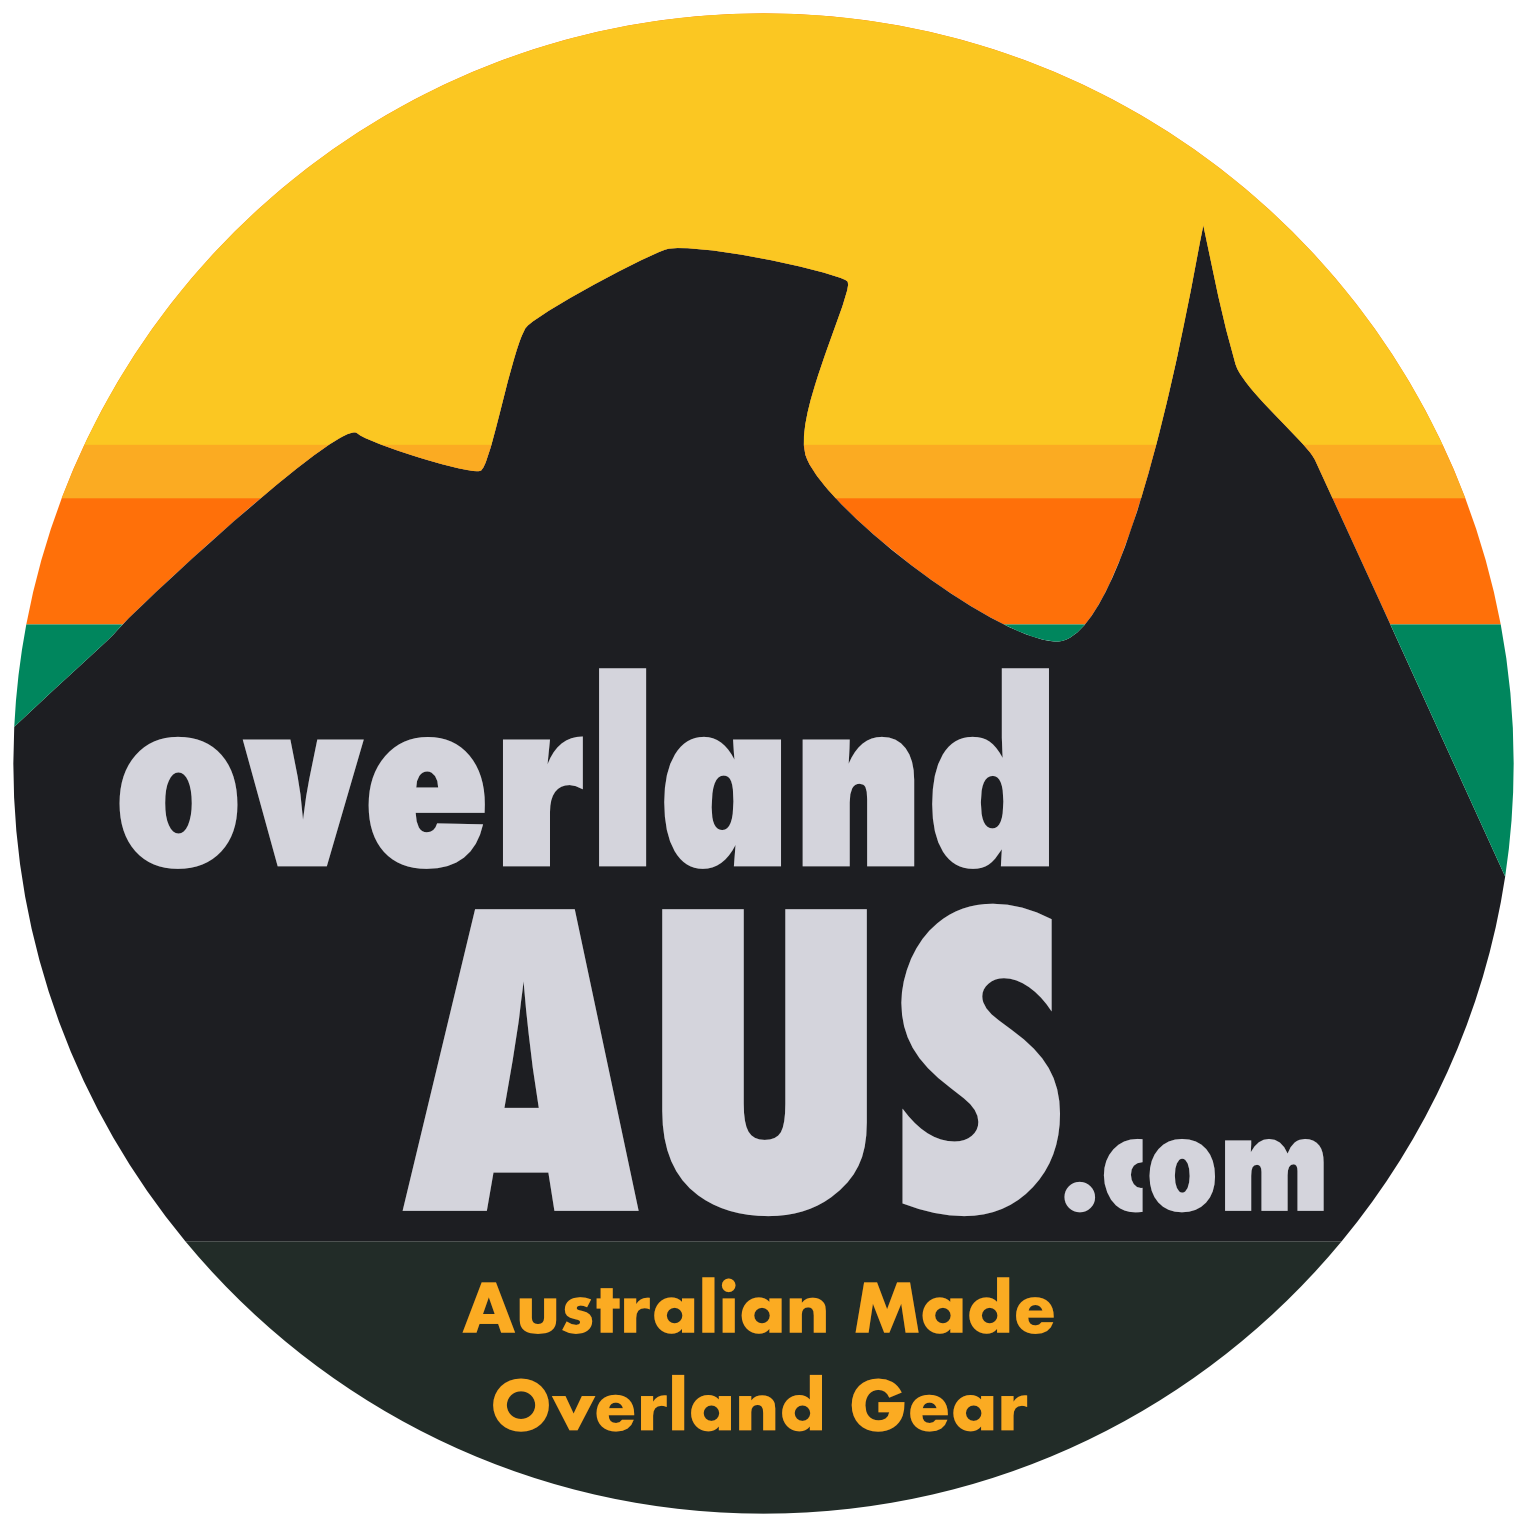 overlandAUS_com